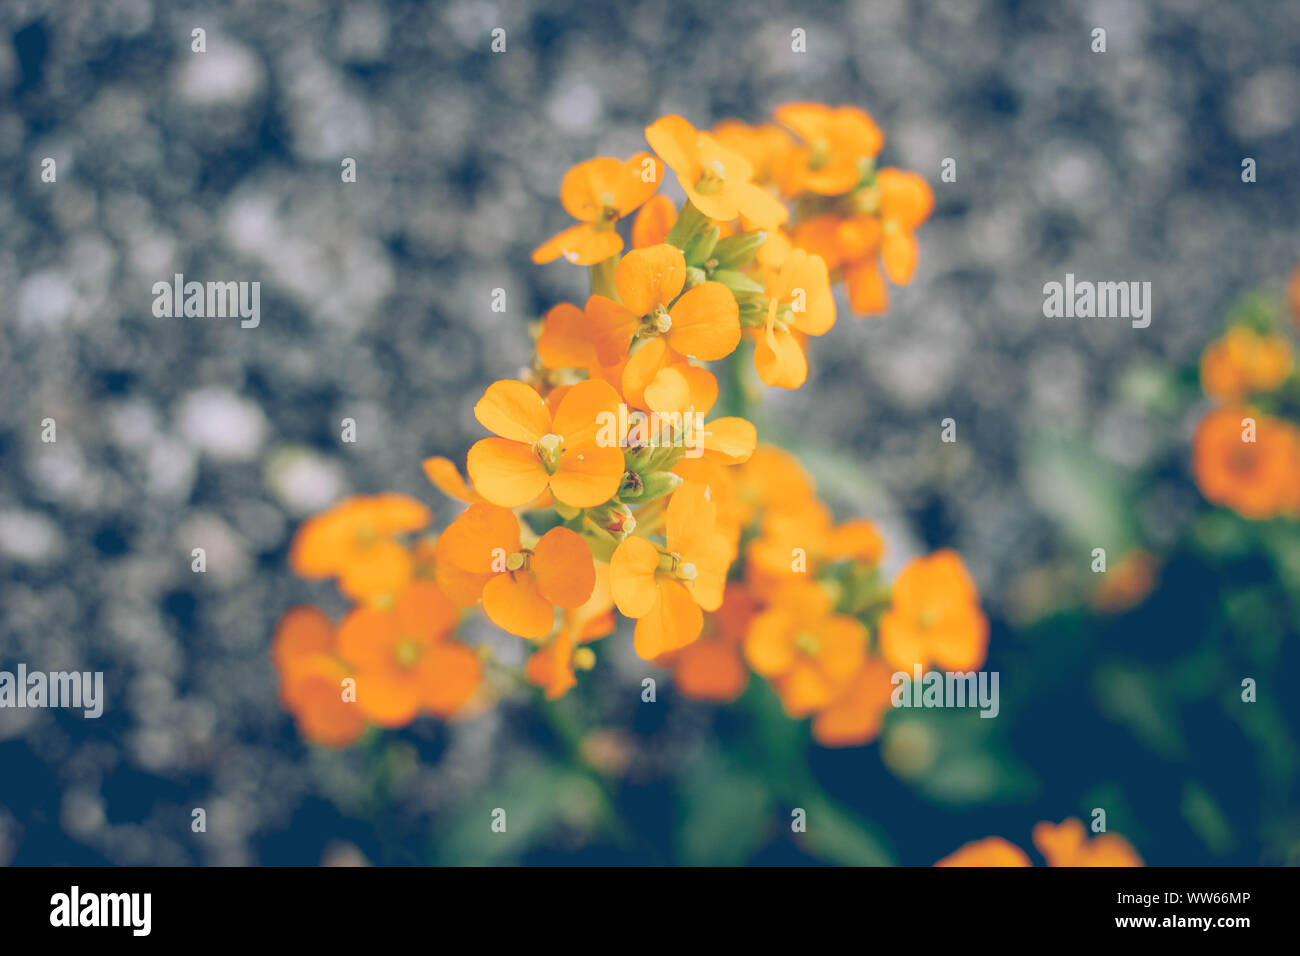 Blossoms of the wallflower, Erysimum cheiri, close-up Stock Photo